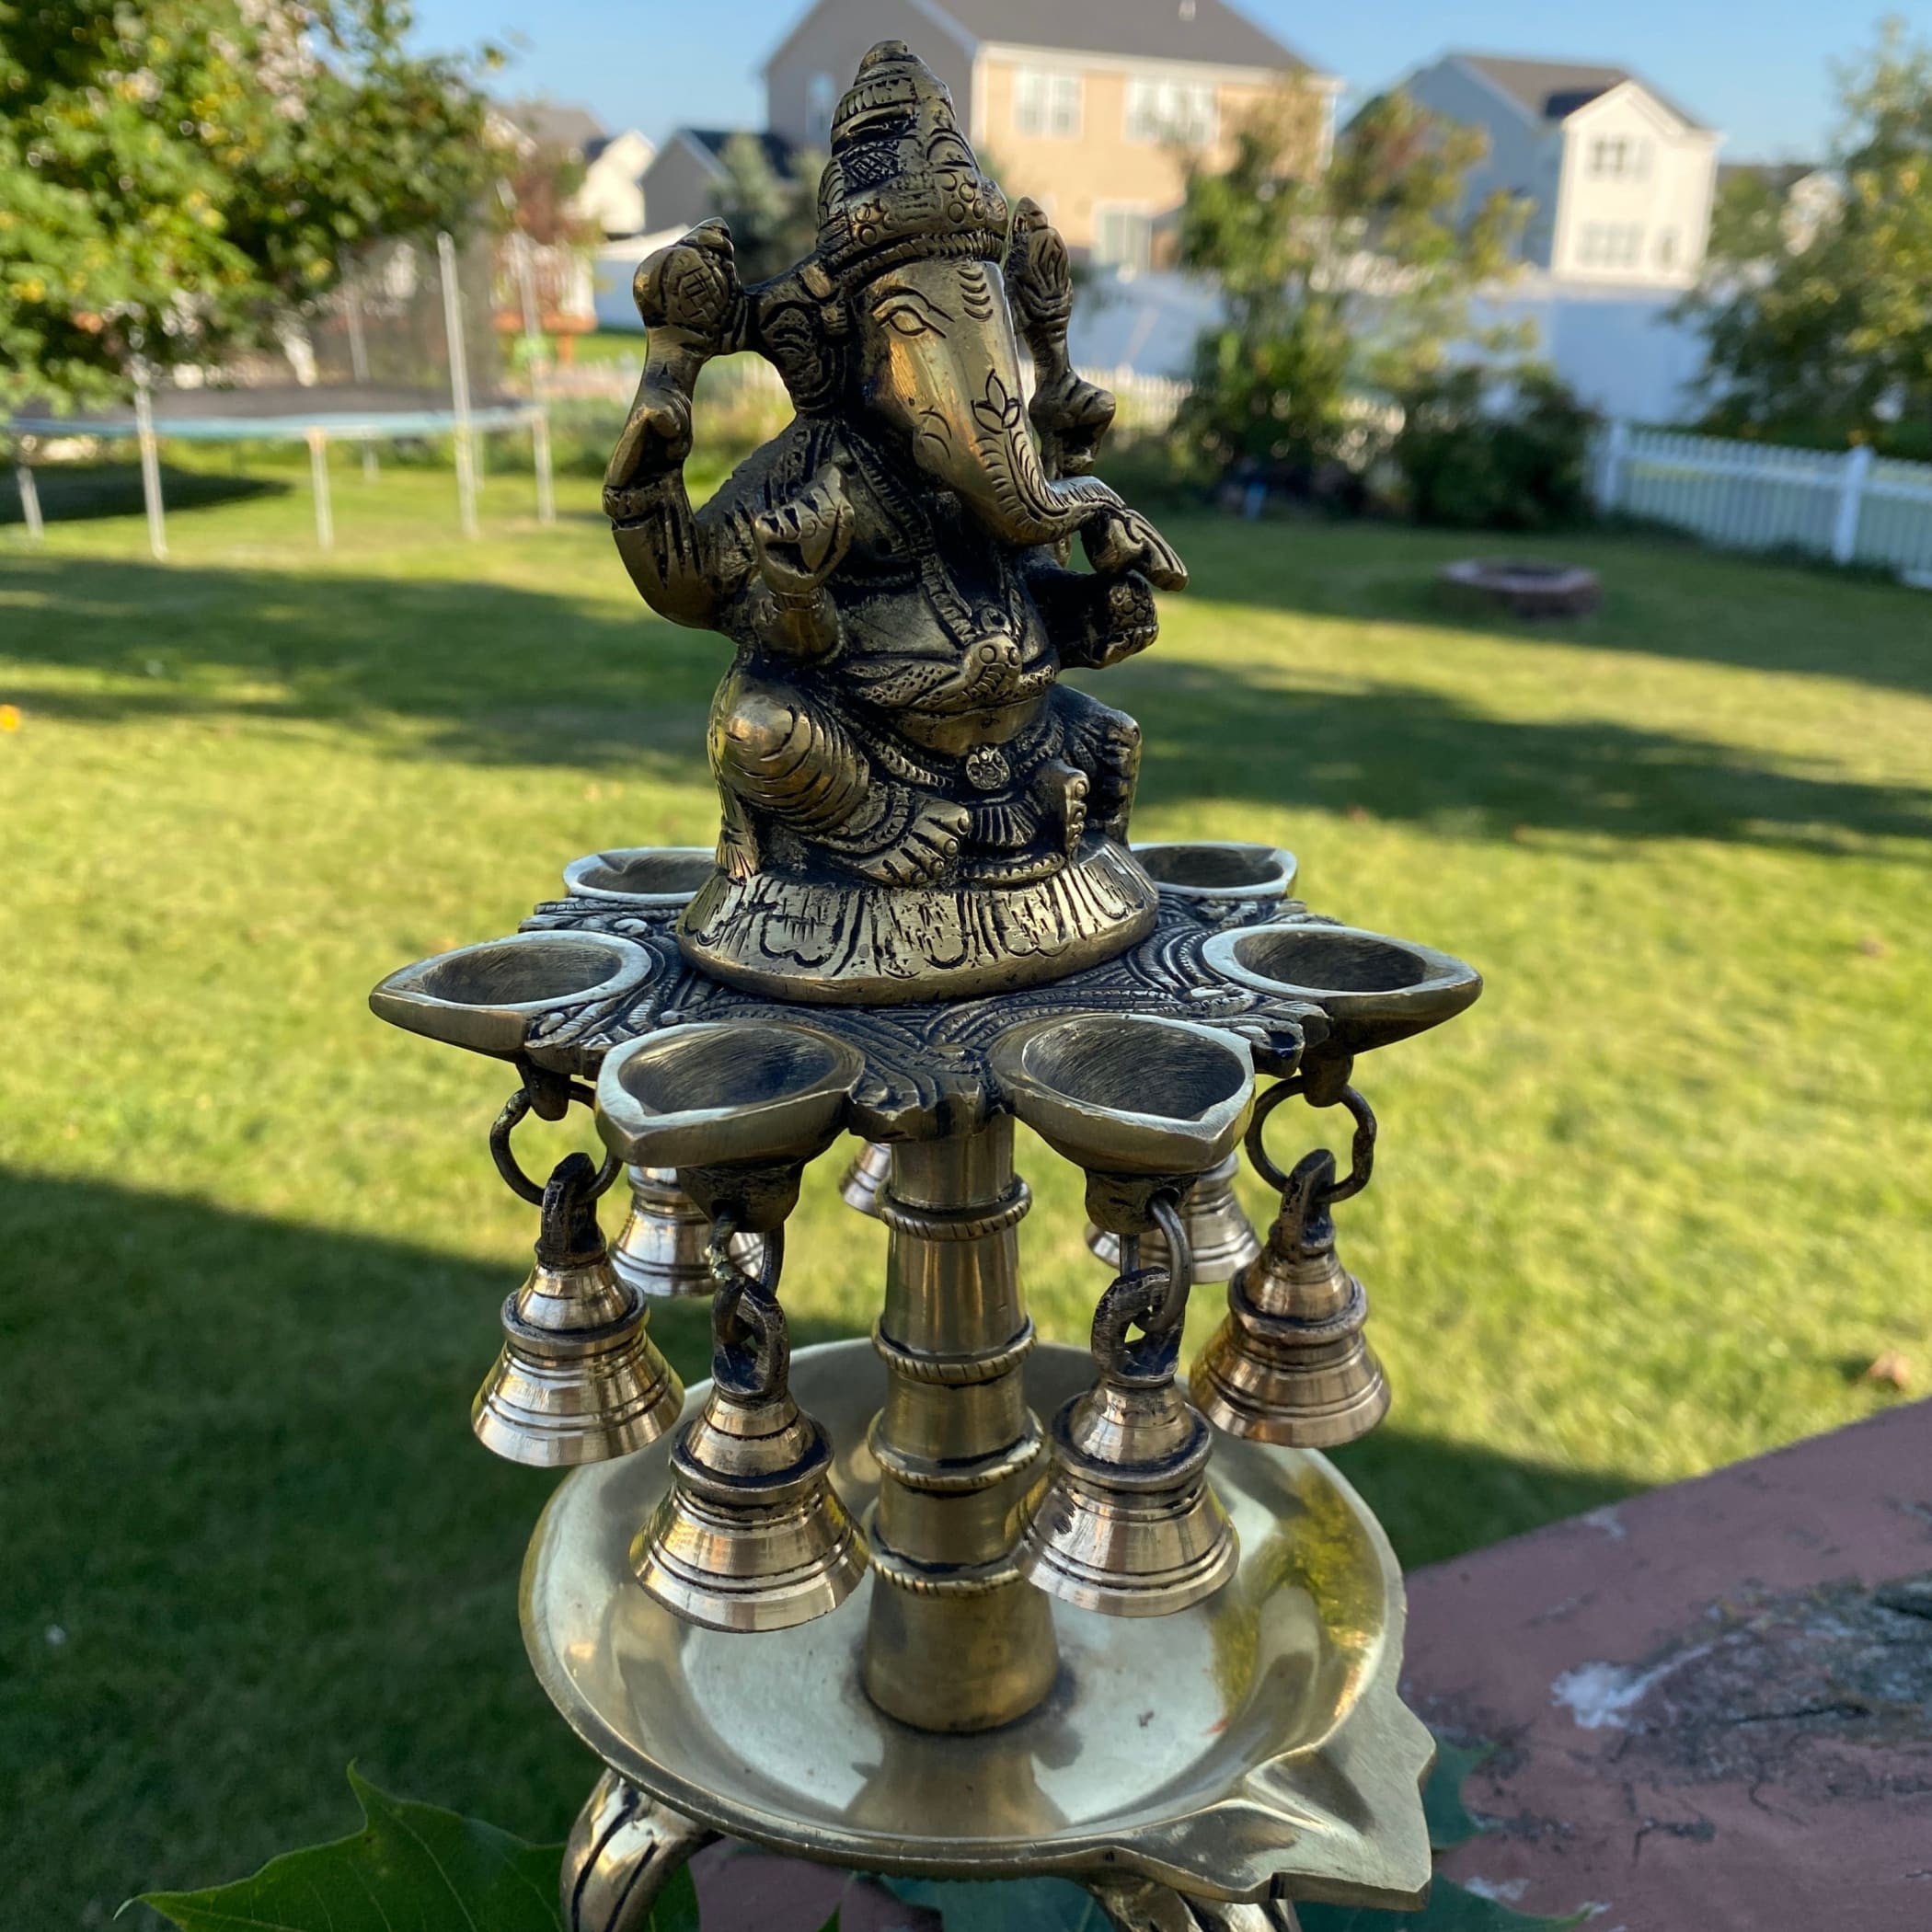 Ganesha brass oil tall diya samai diwali decor lamp altar